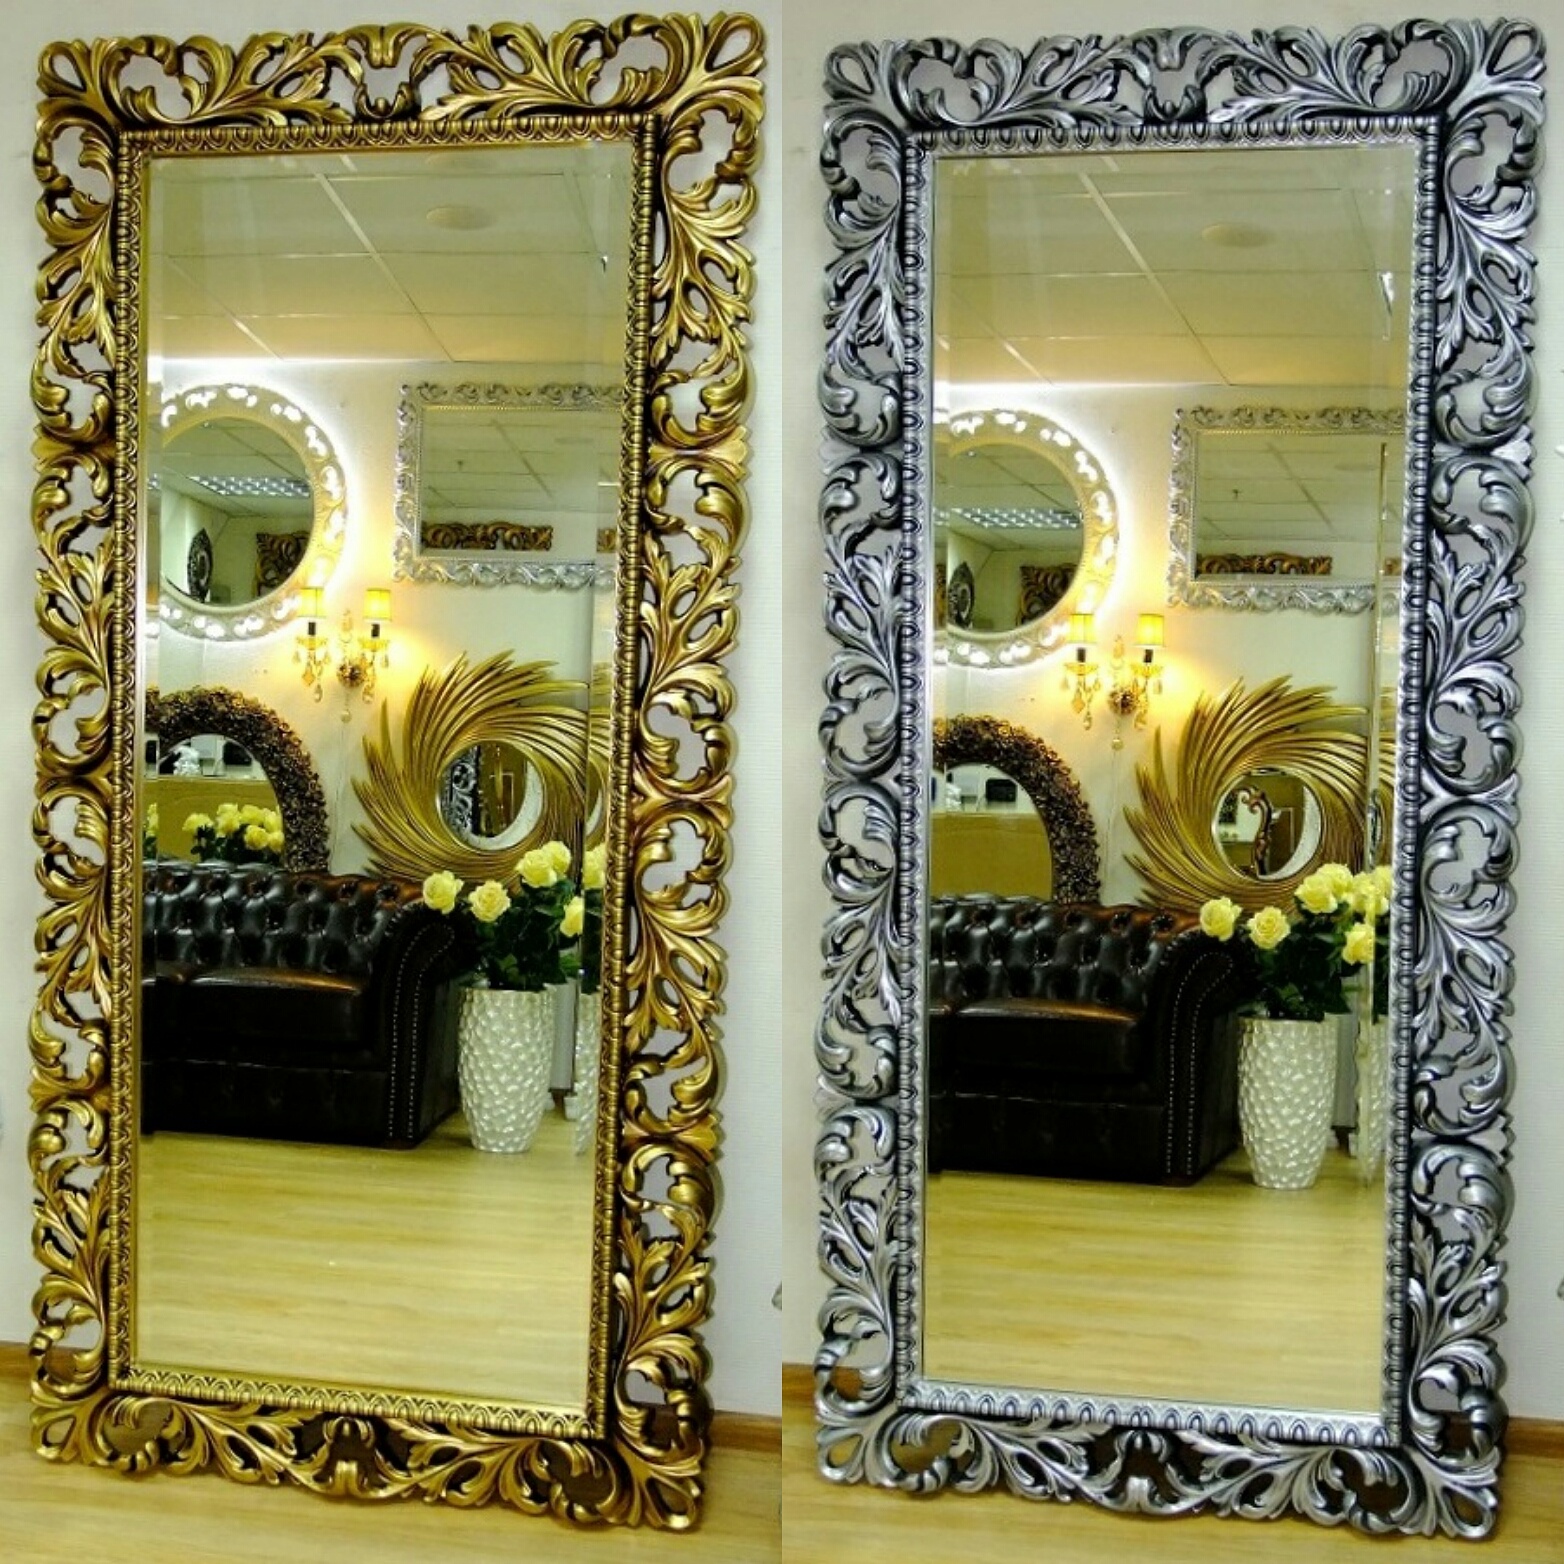 Зеркало в резной раме индивидуального размера и цвета на заказ в Тамано.ру